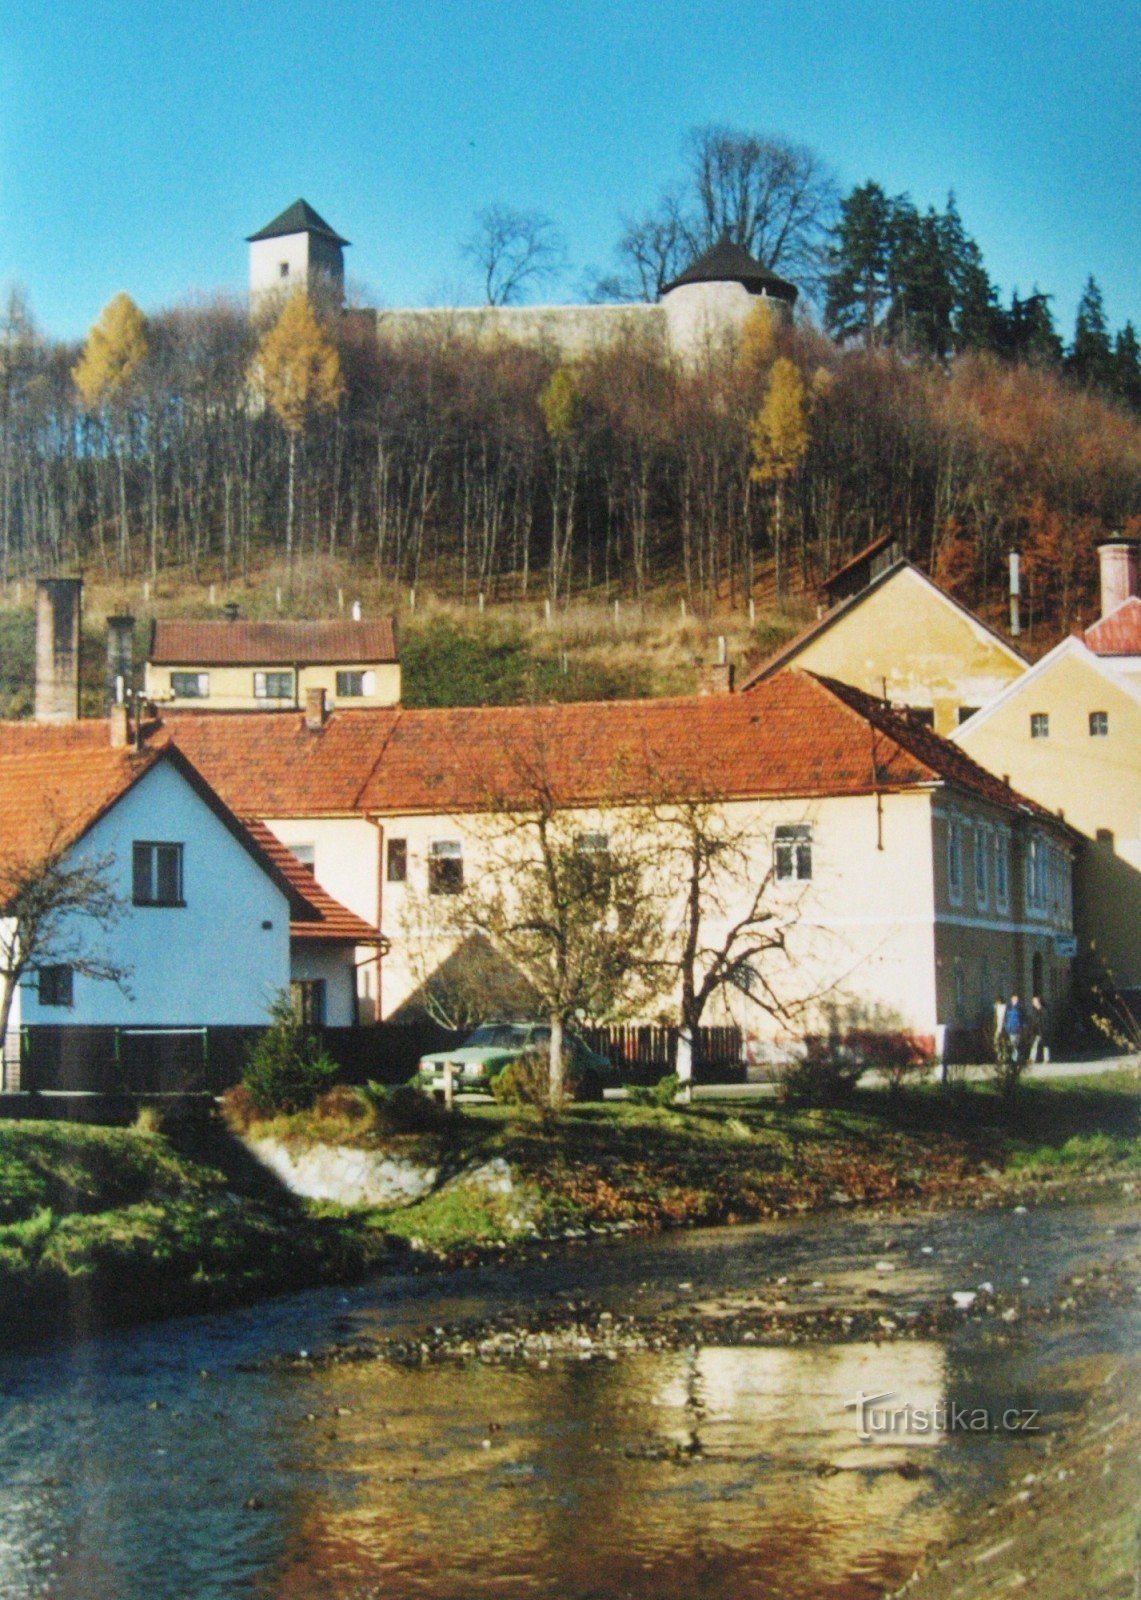 Hình ảnh từ quê hương - Bylnice - Horní Lideč theo dõi tour